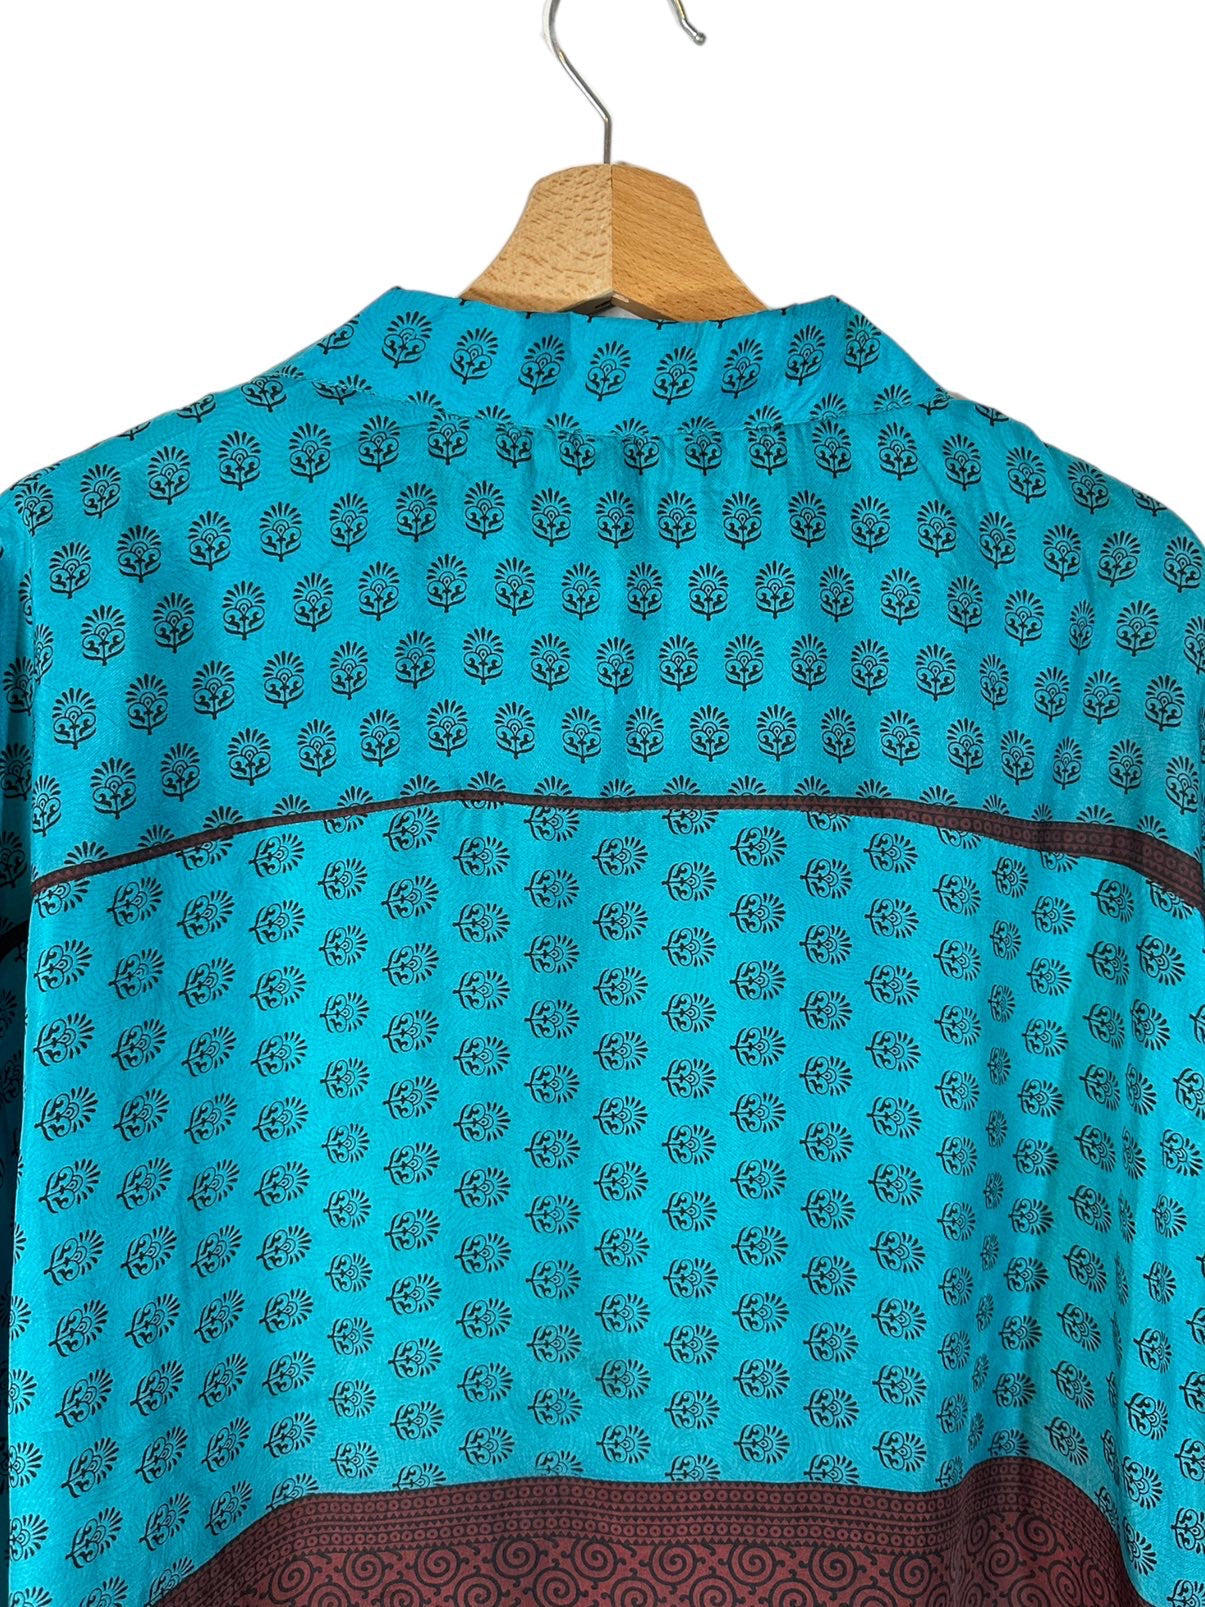 Camisa impressa de seda vintage (xl)